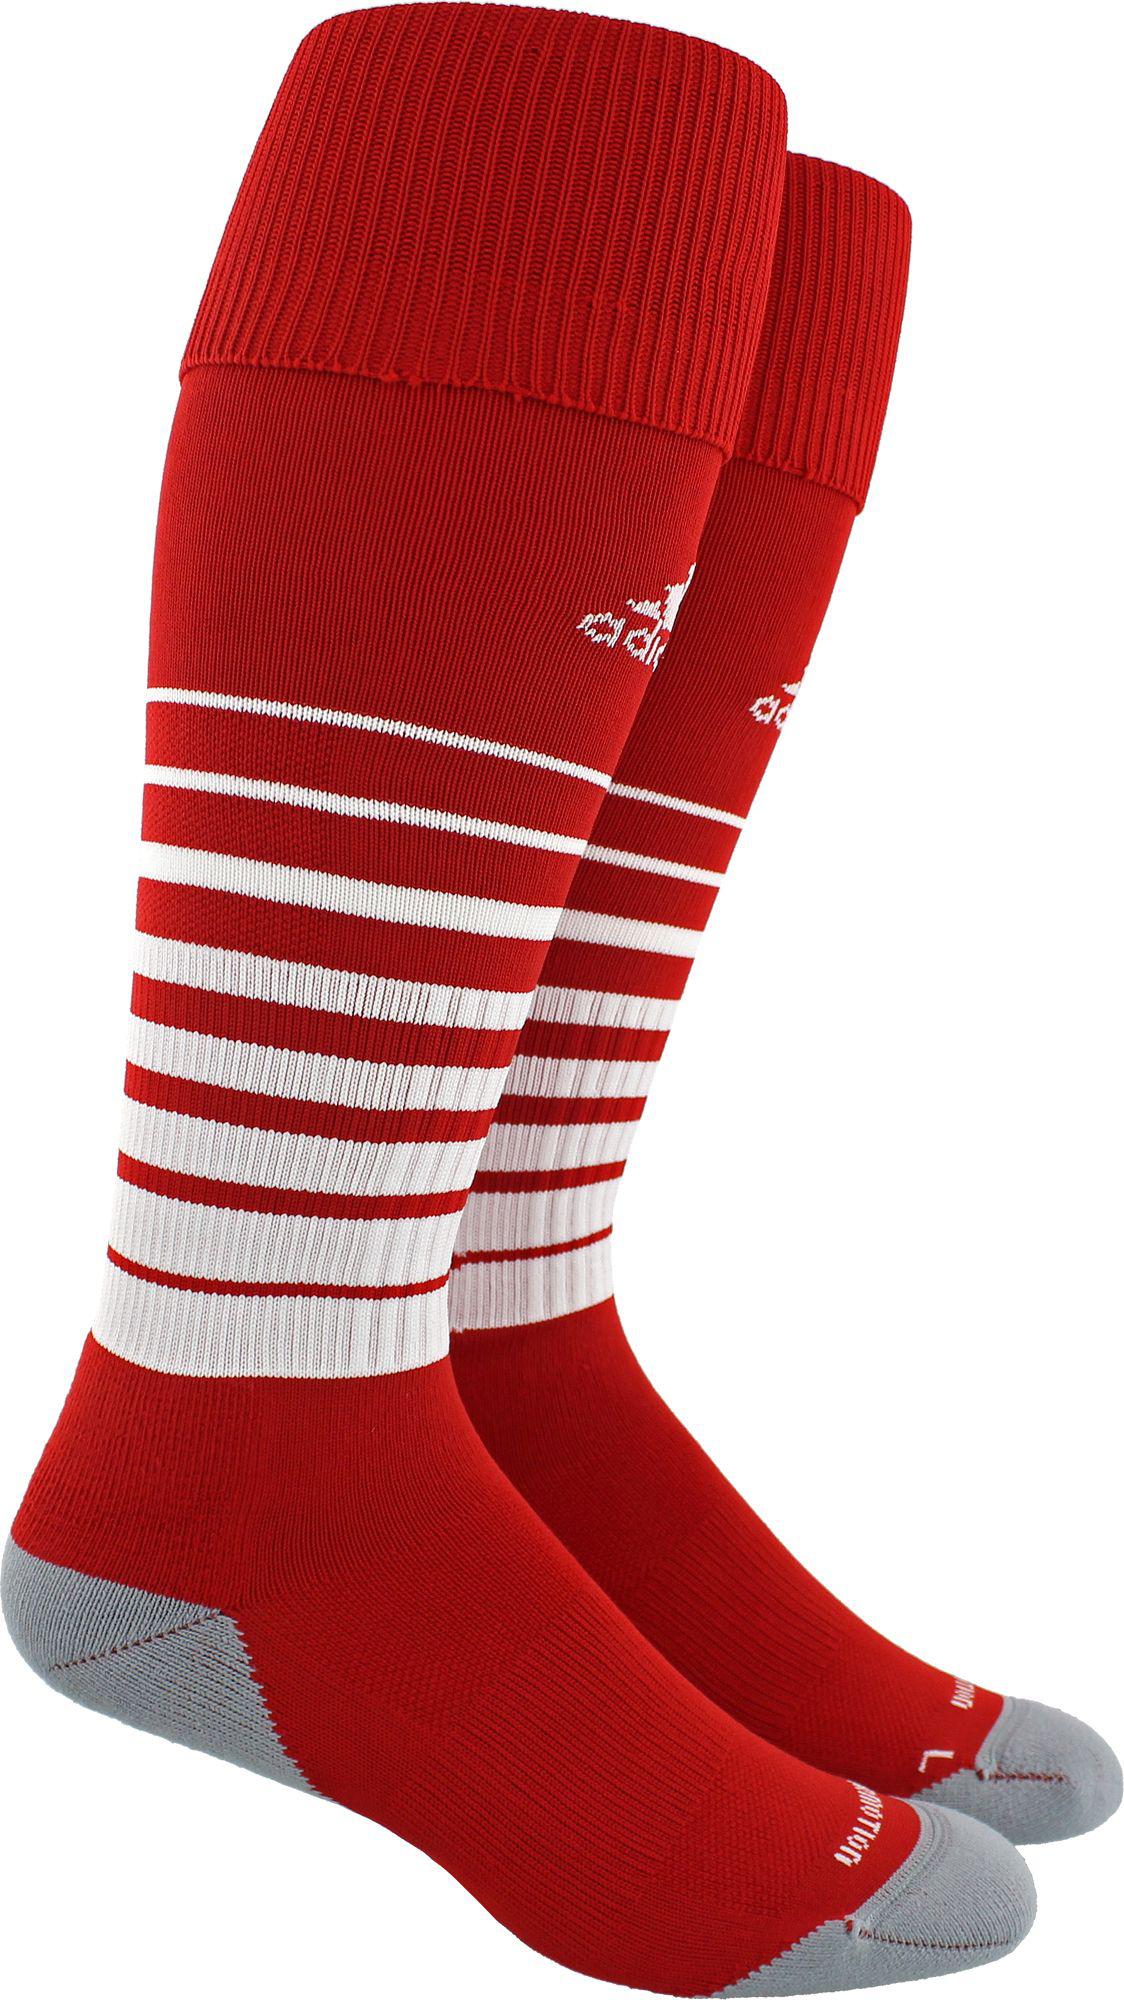 adidas soccer socks 1